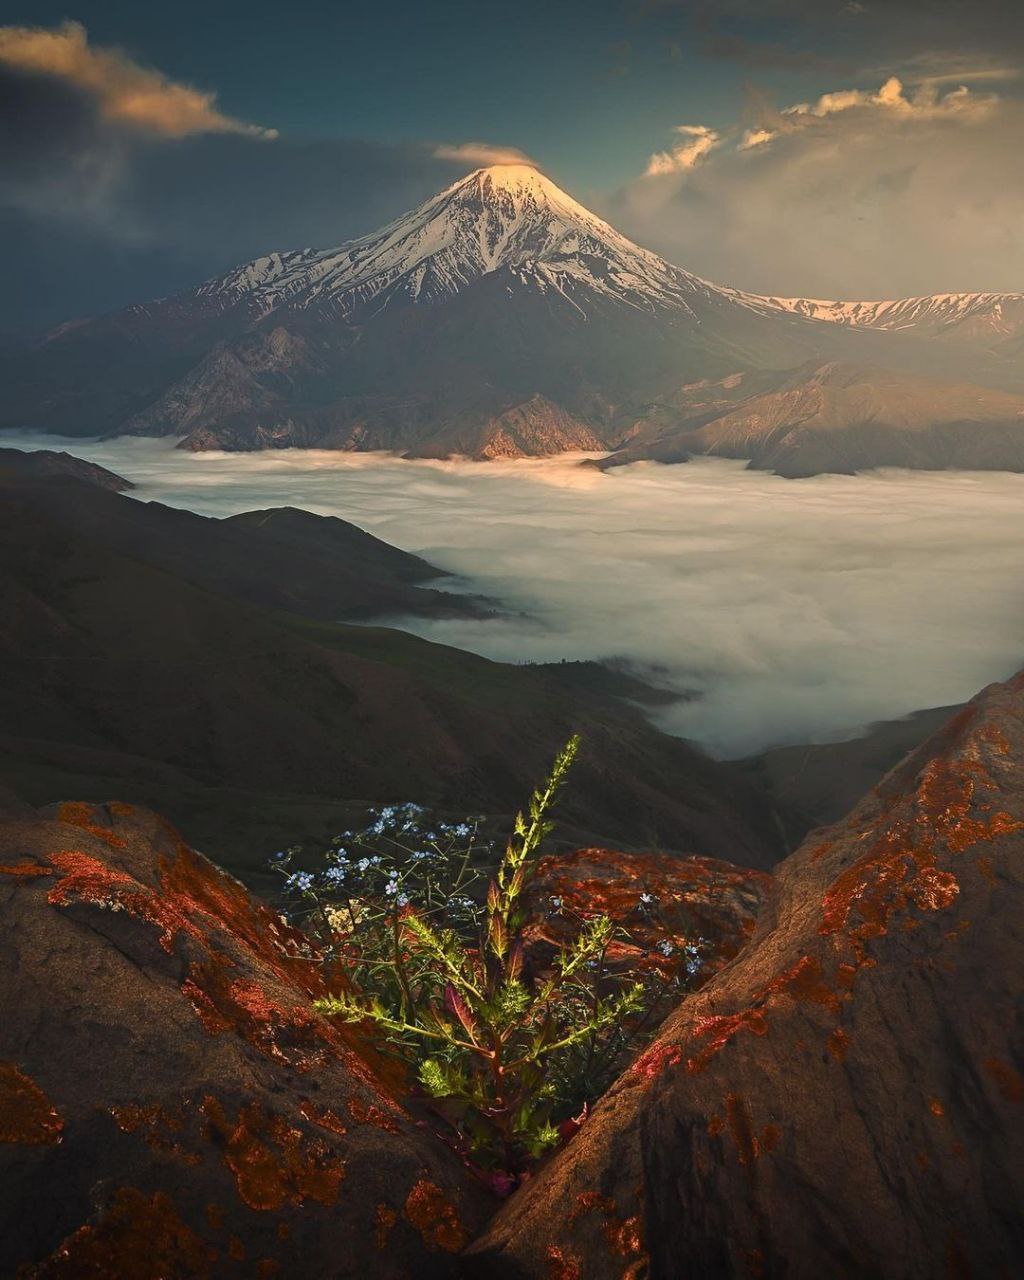 زیباترین تصویر از قله دماوند را ببینید